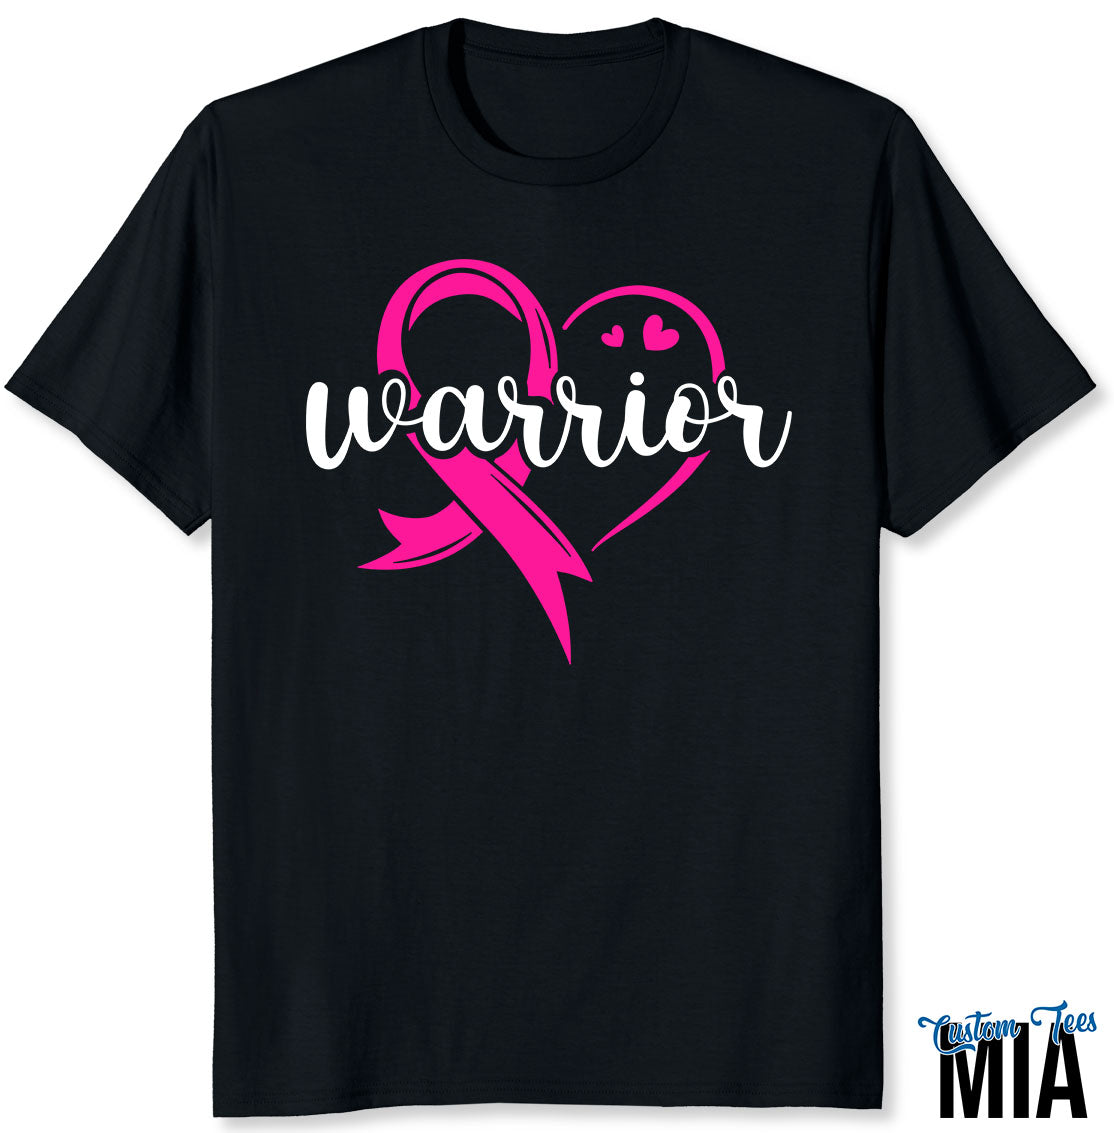 Warrior Breast Cancer Awareness T-Shirt